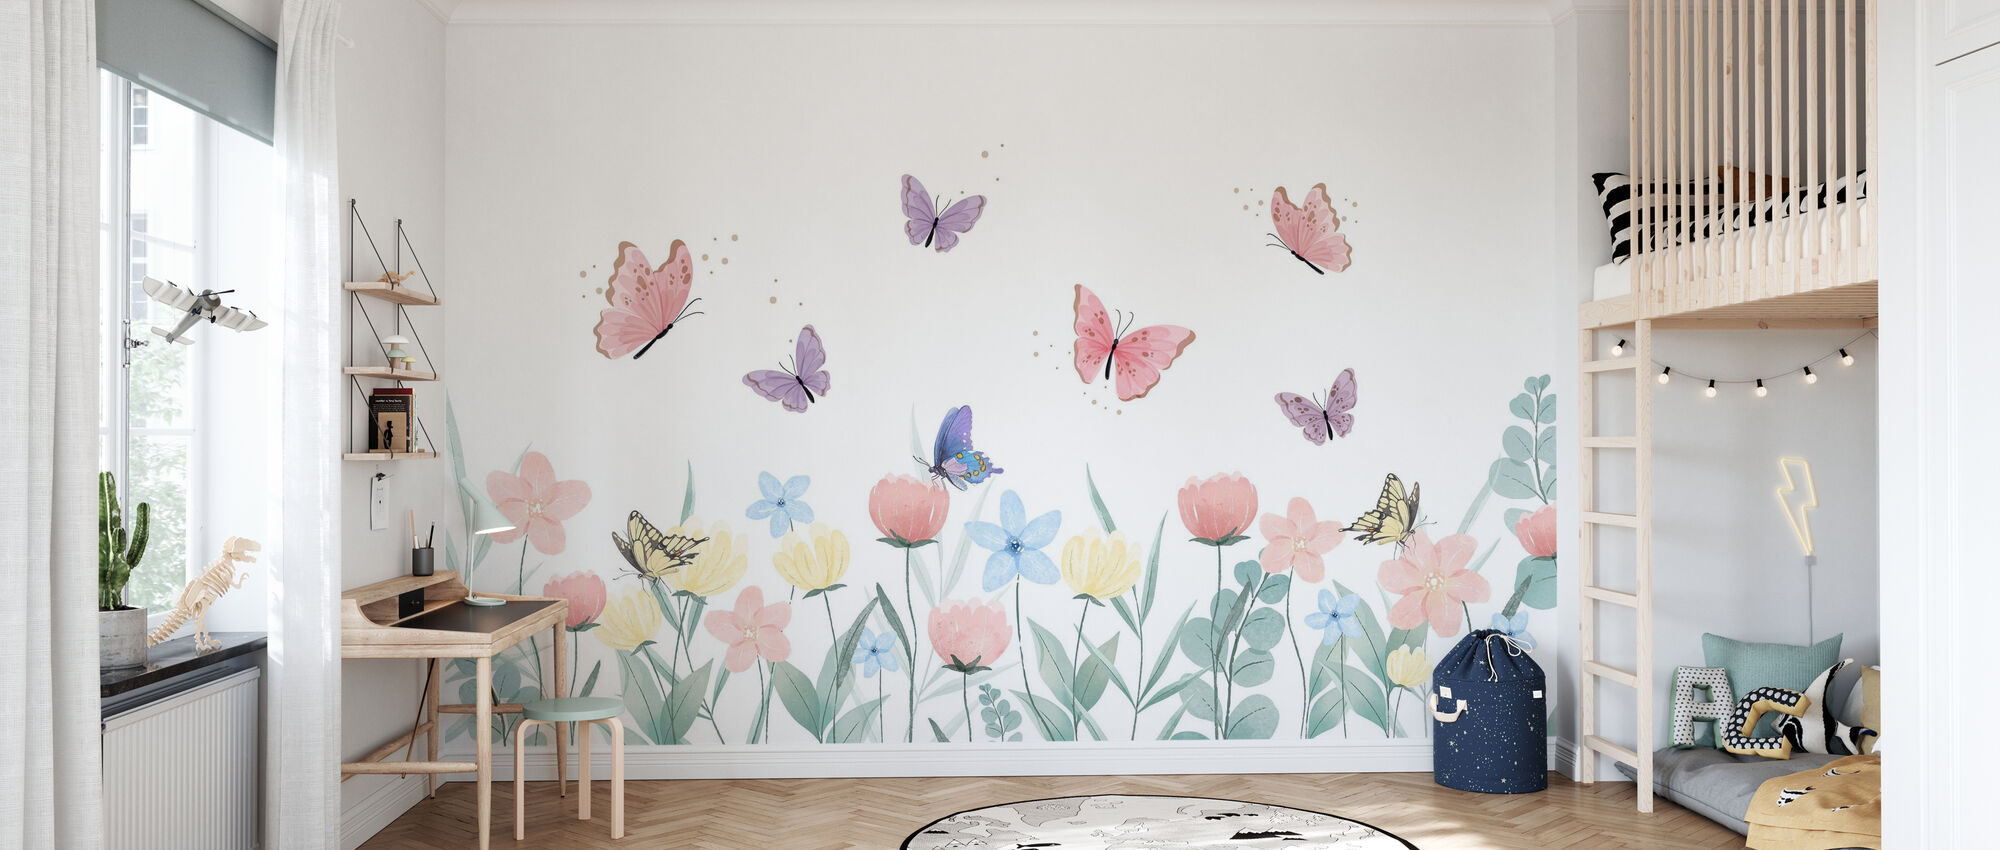 Flowers and Butterflies – Kostenlos gelieferte Fototapete von höchster  Qualität – Photowall